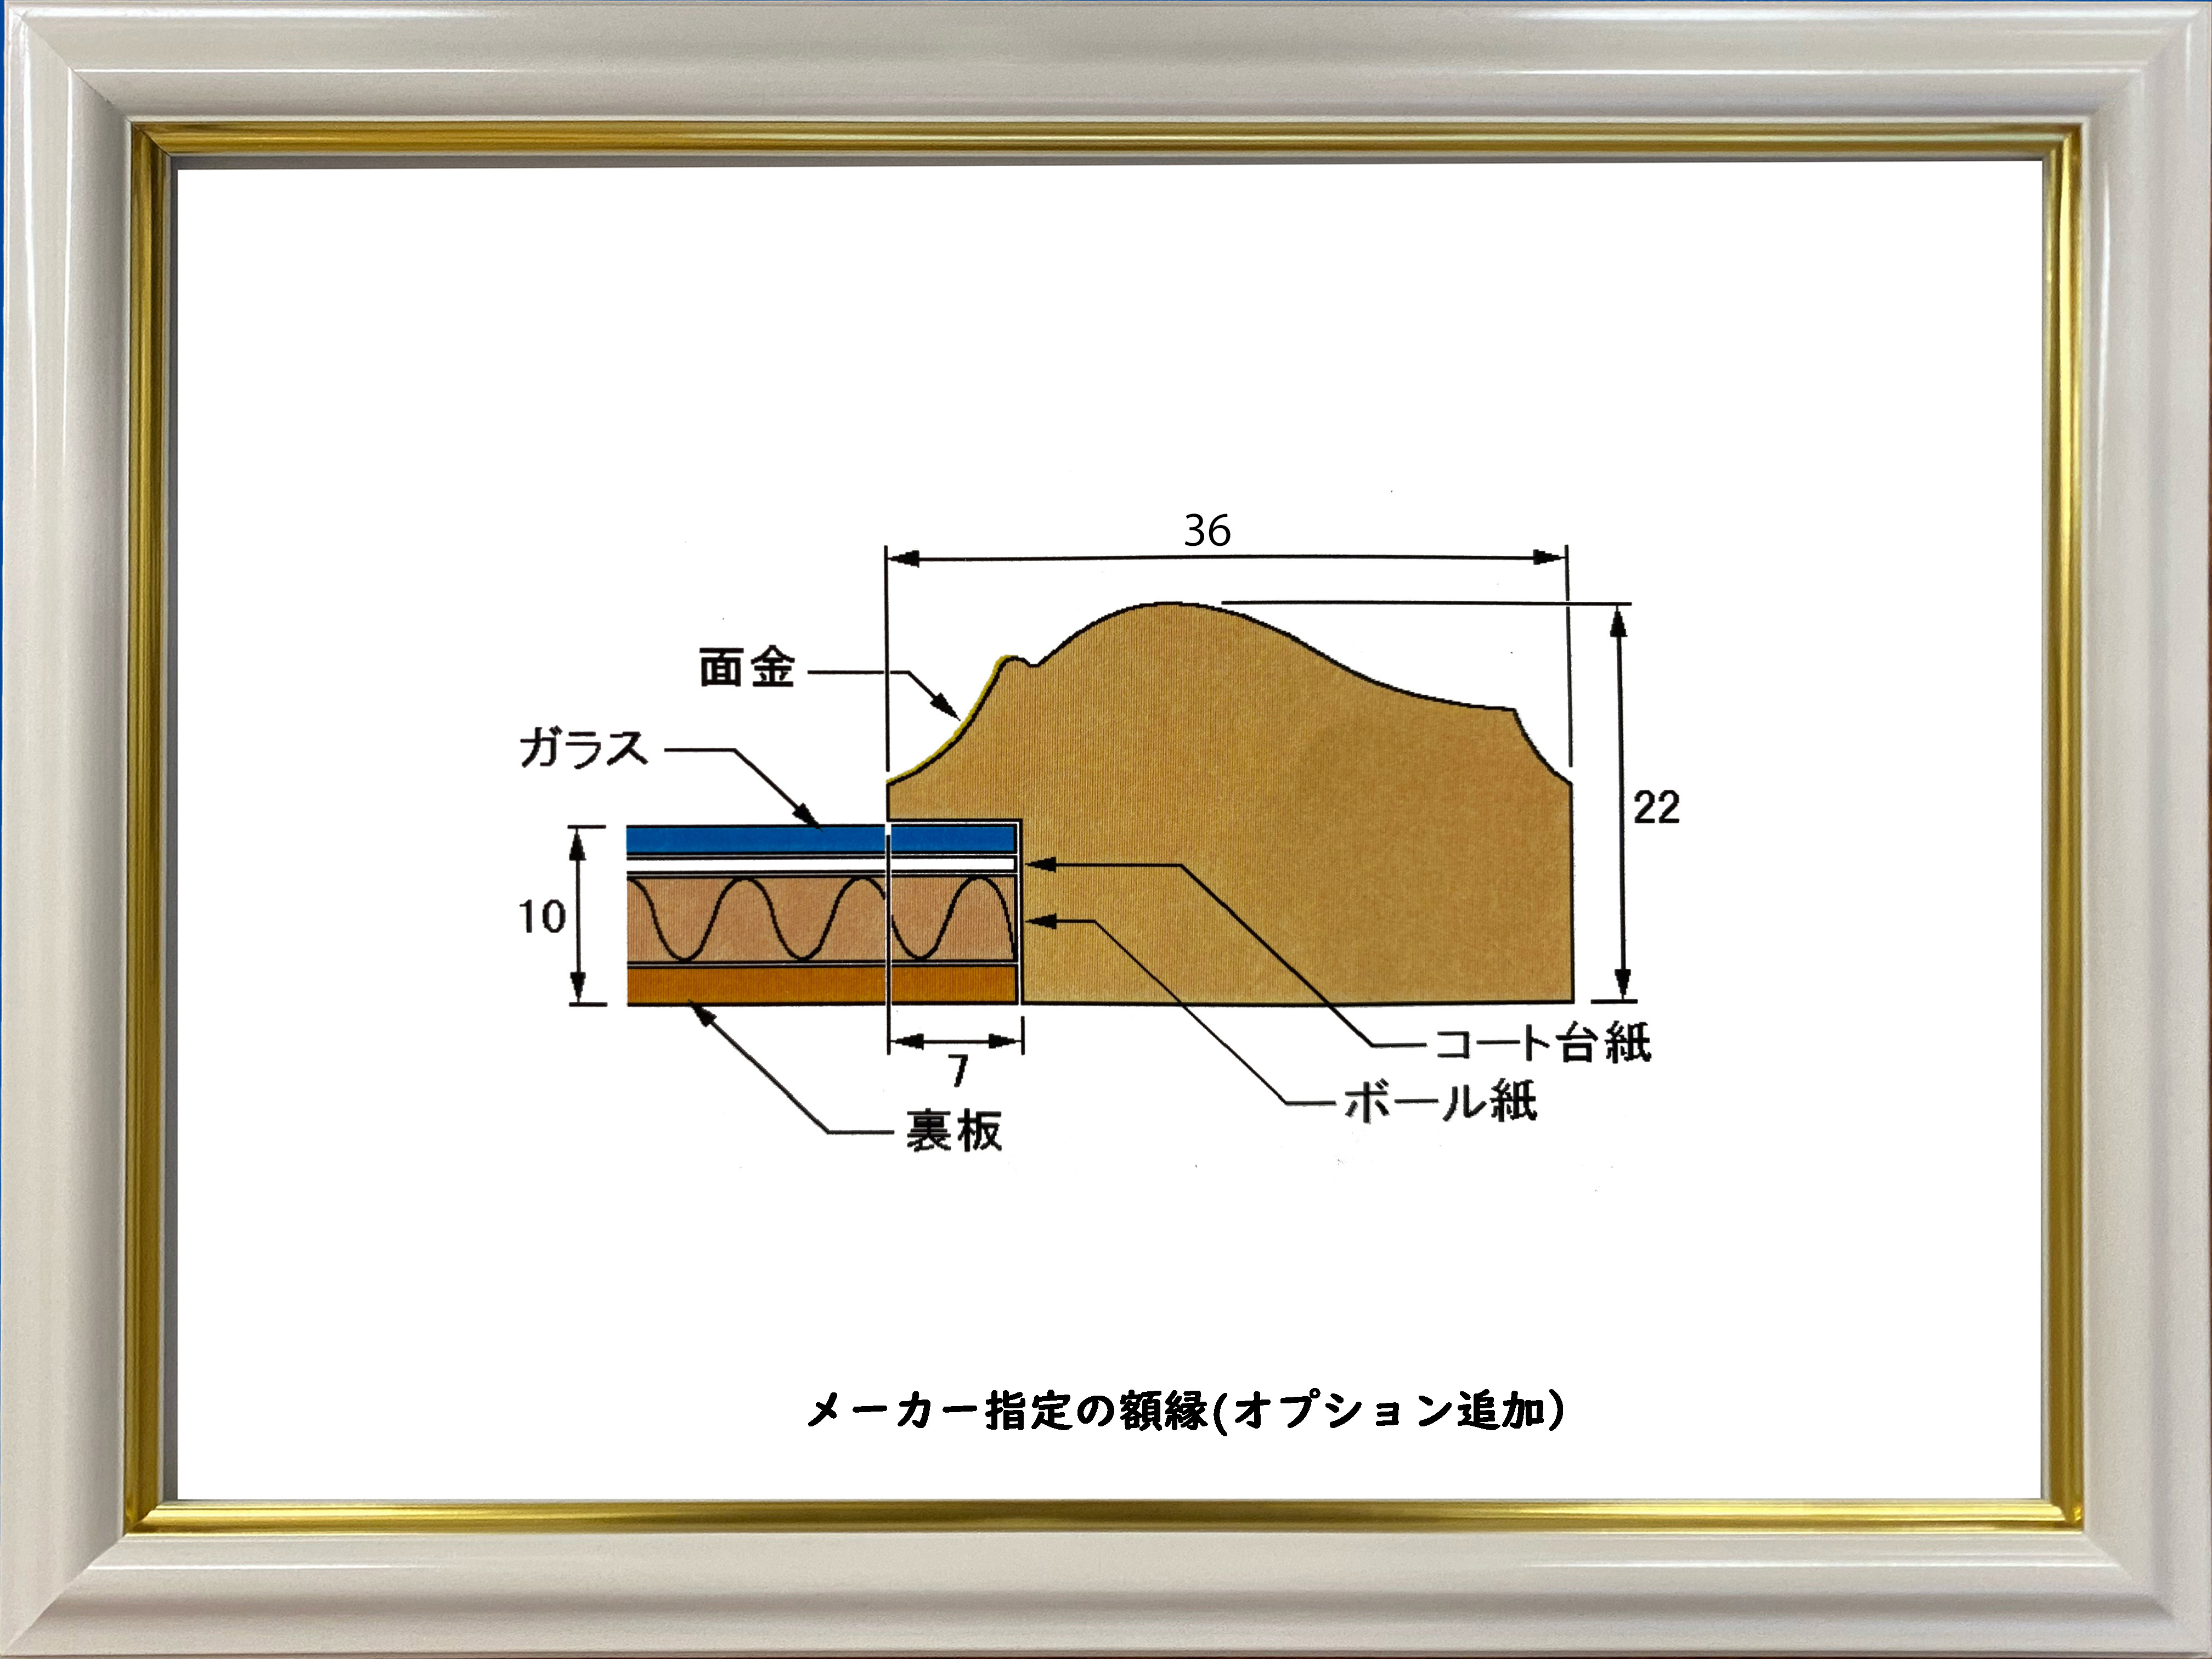 ji- gray woodcut Yoshioka . Taro -inch mat attaching better fortune maneki-neko [. is good ]